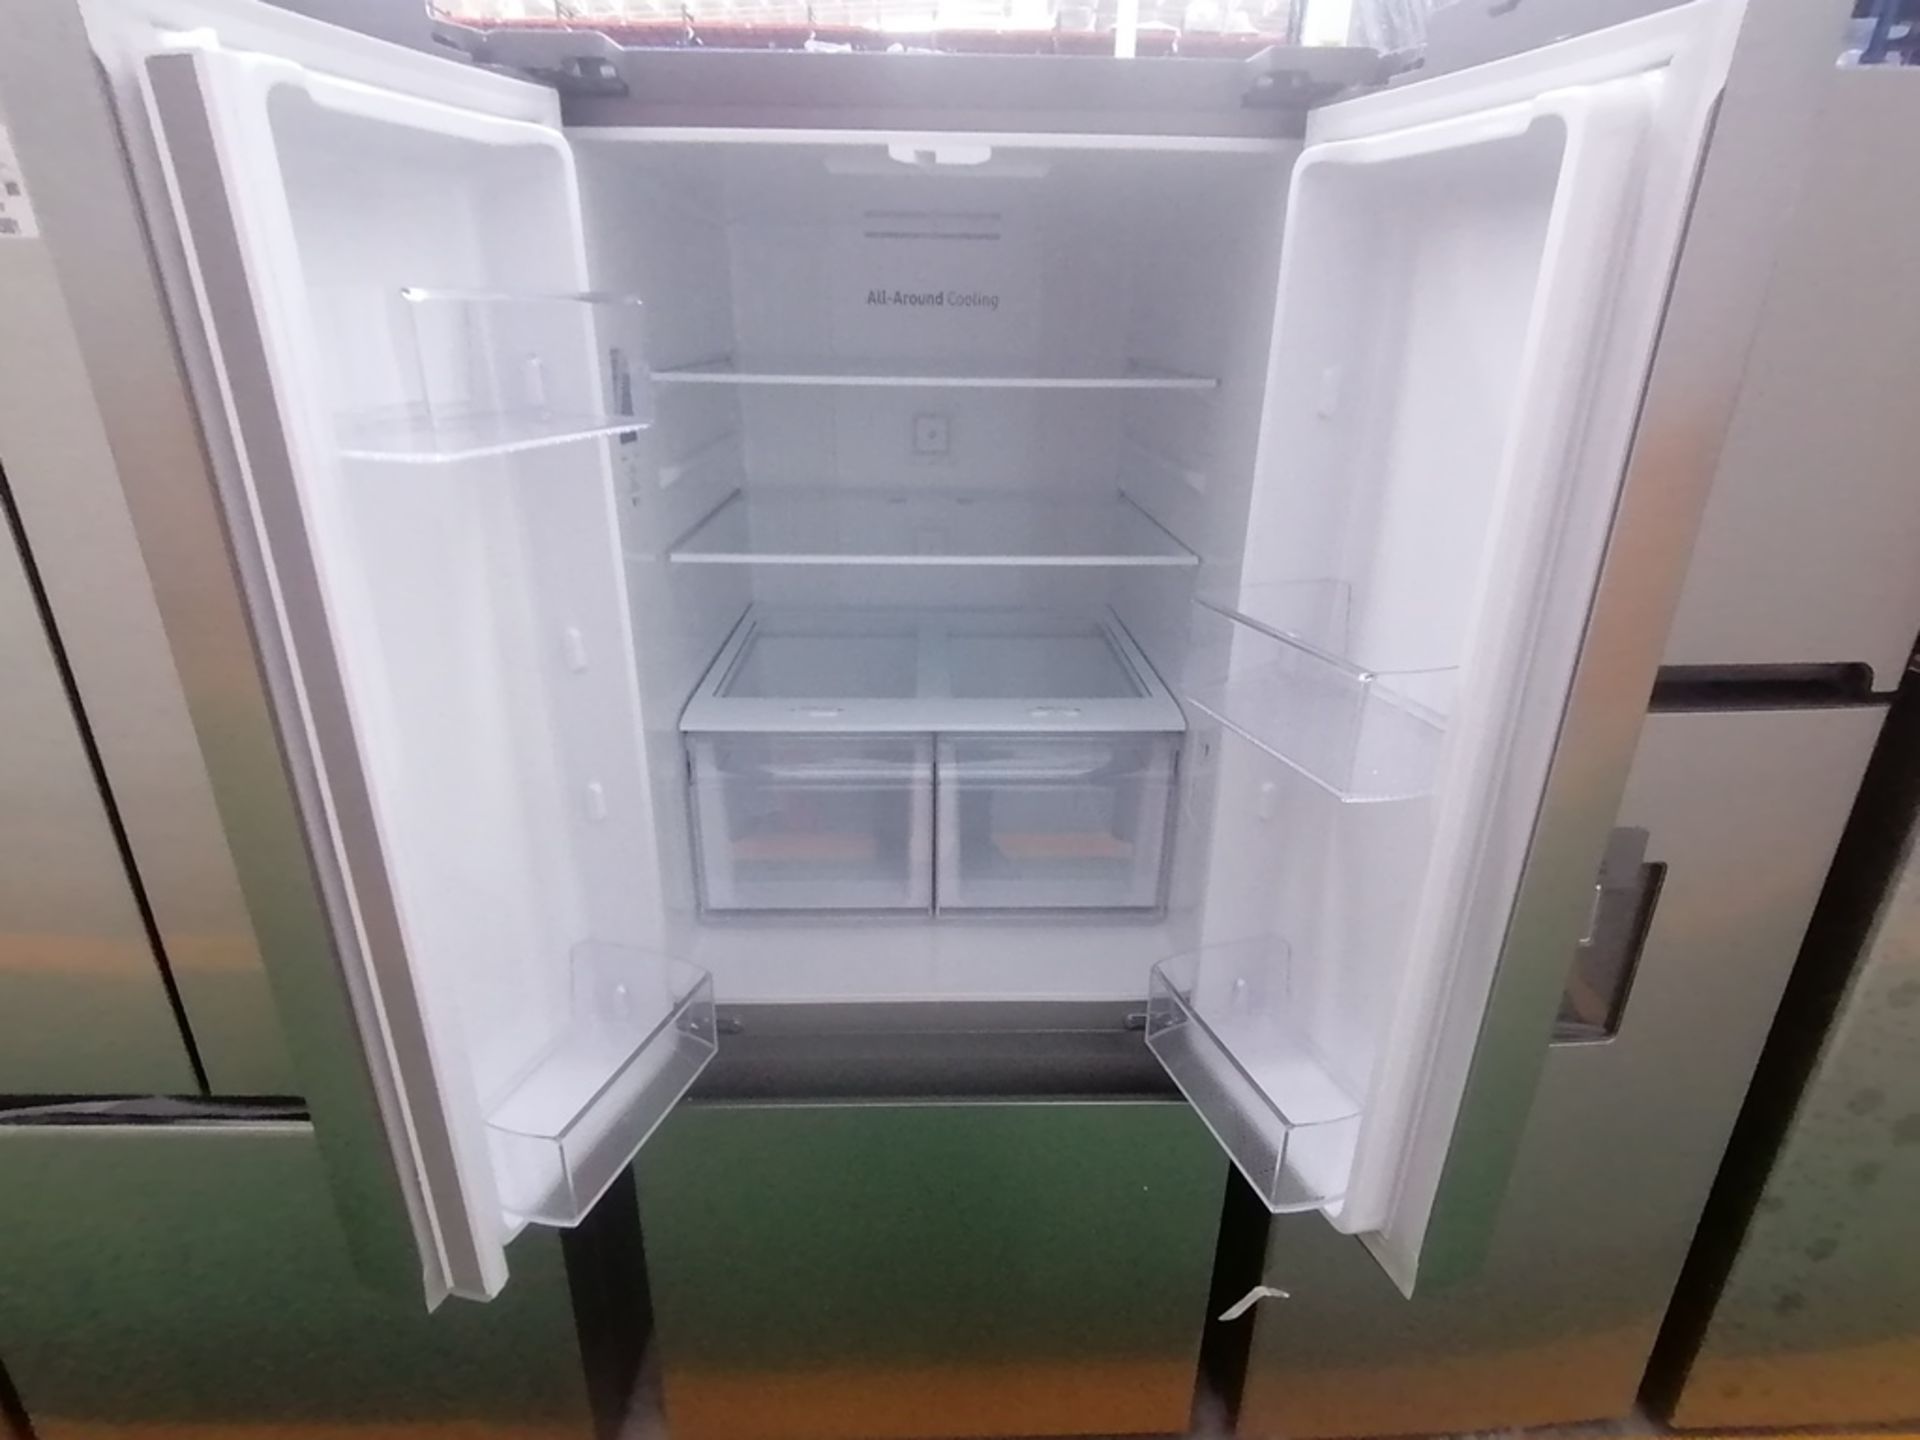 Lote de 2 refrigeradores incluye: 1 Refrigerador, Marca Samsung, Modelo RT22A401059, Serie 0BA84BBR - Image 8 of 15